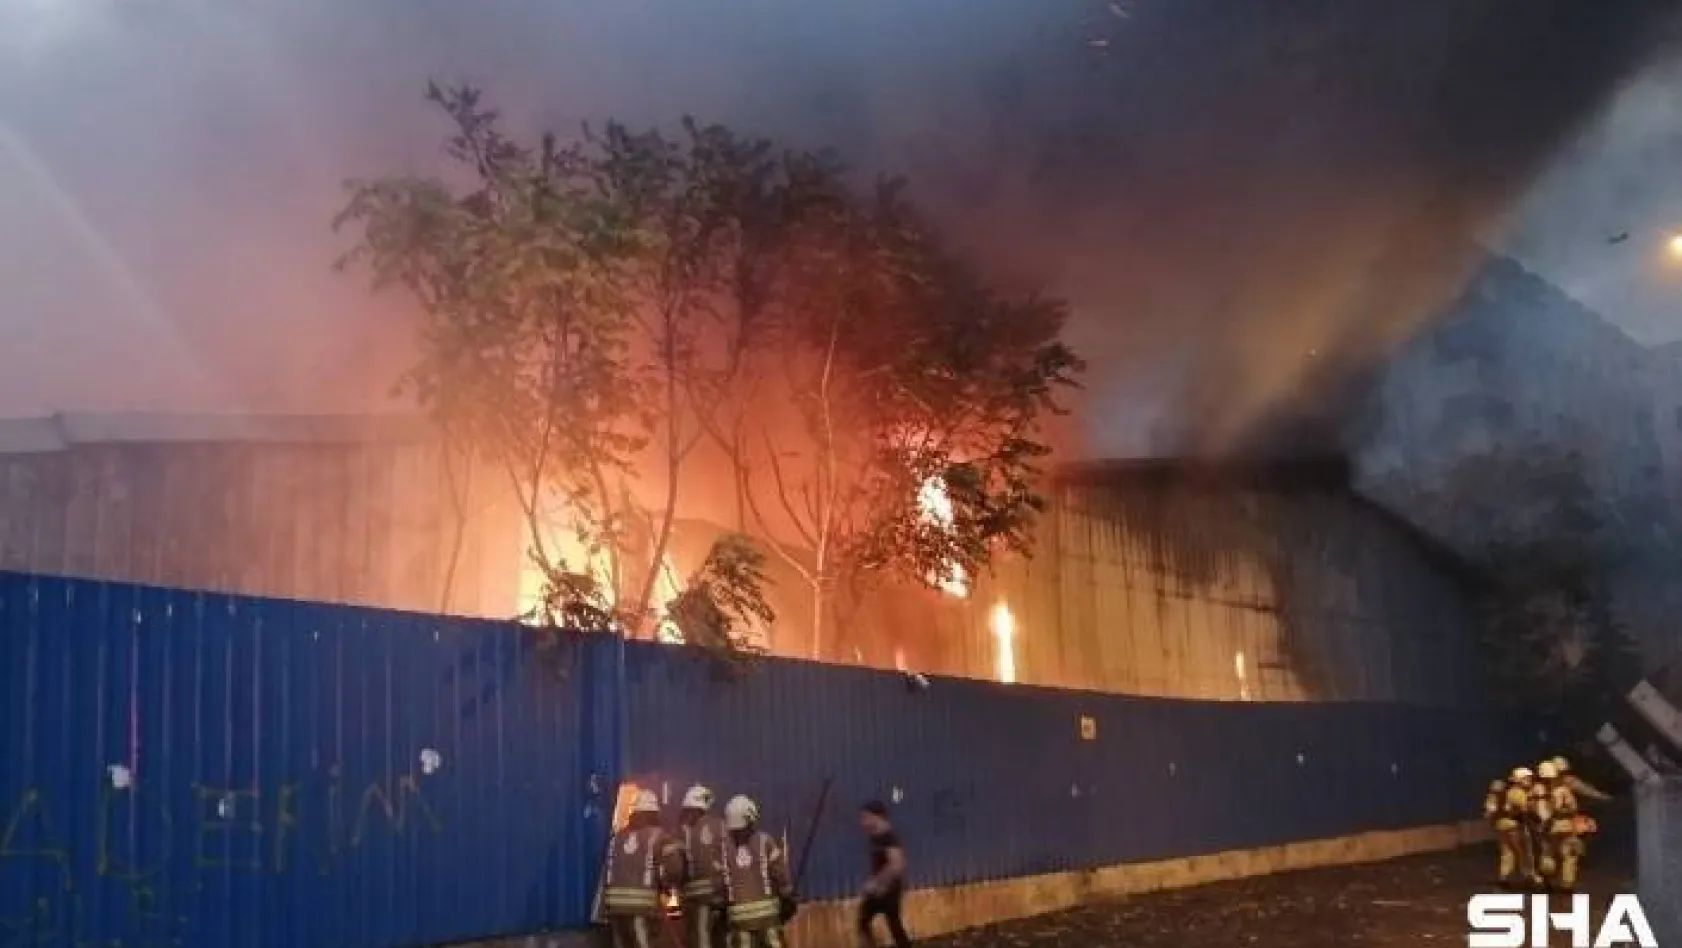 Kartal'da kağıt fabrikası alev alev yandı